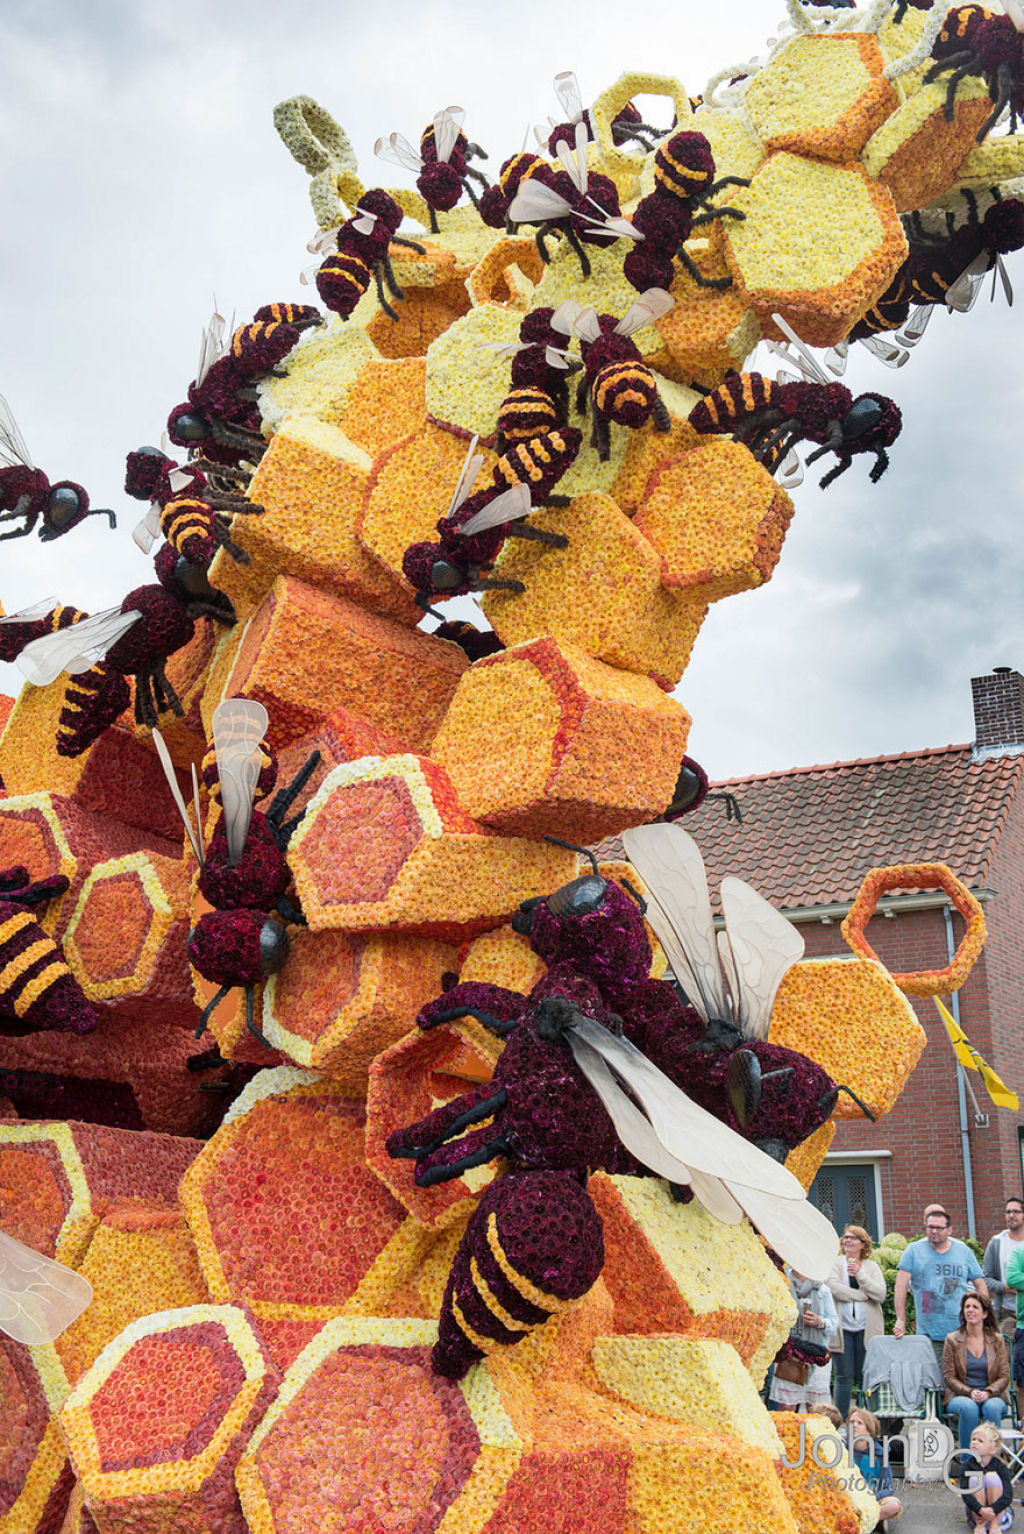 As esculturas gigantes do Corso 2016, o maior desfile floral do mundo 15